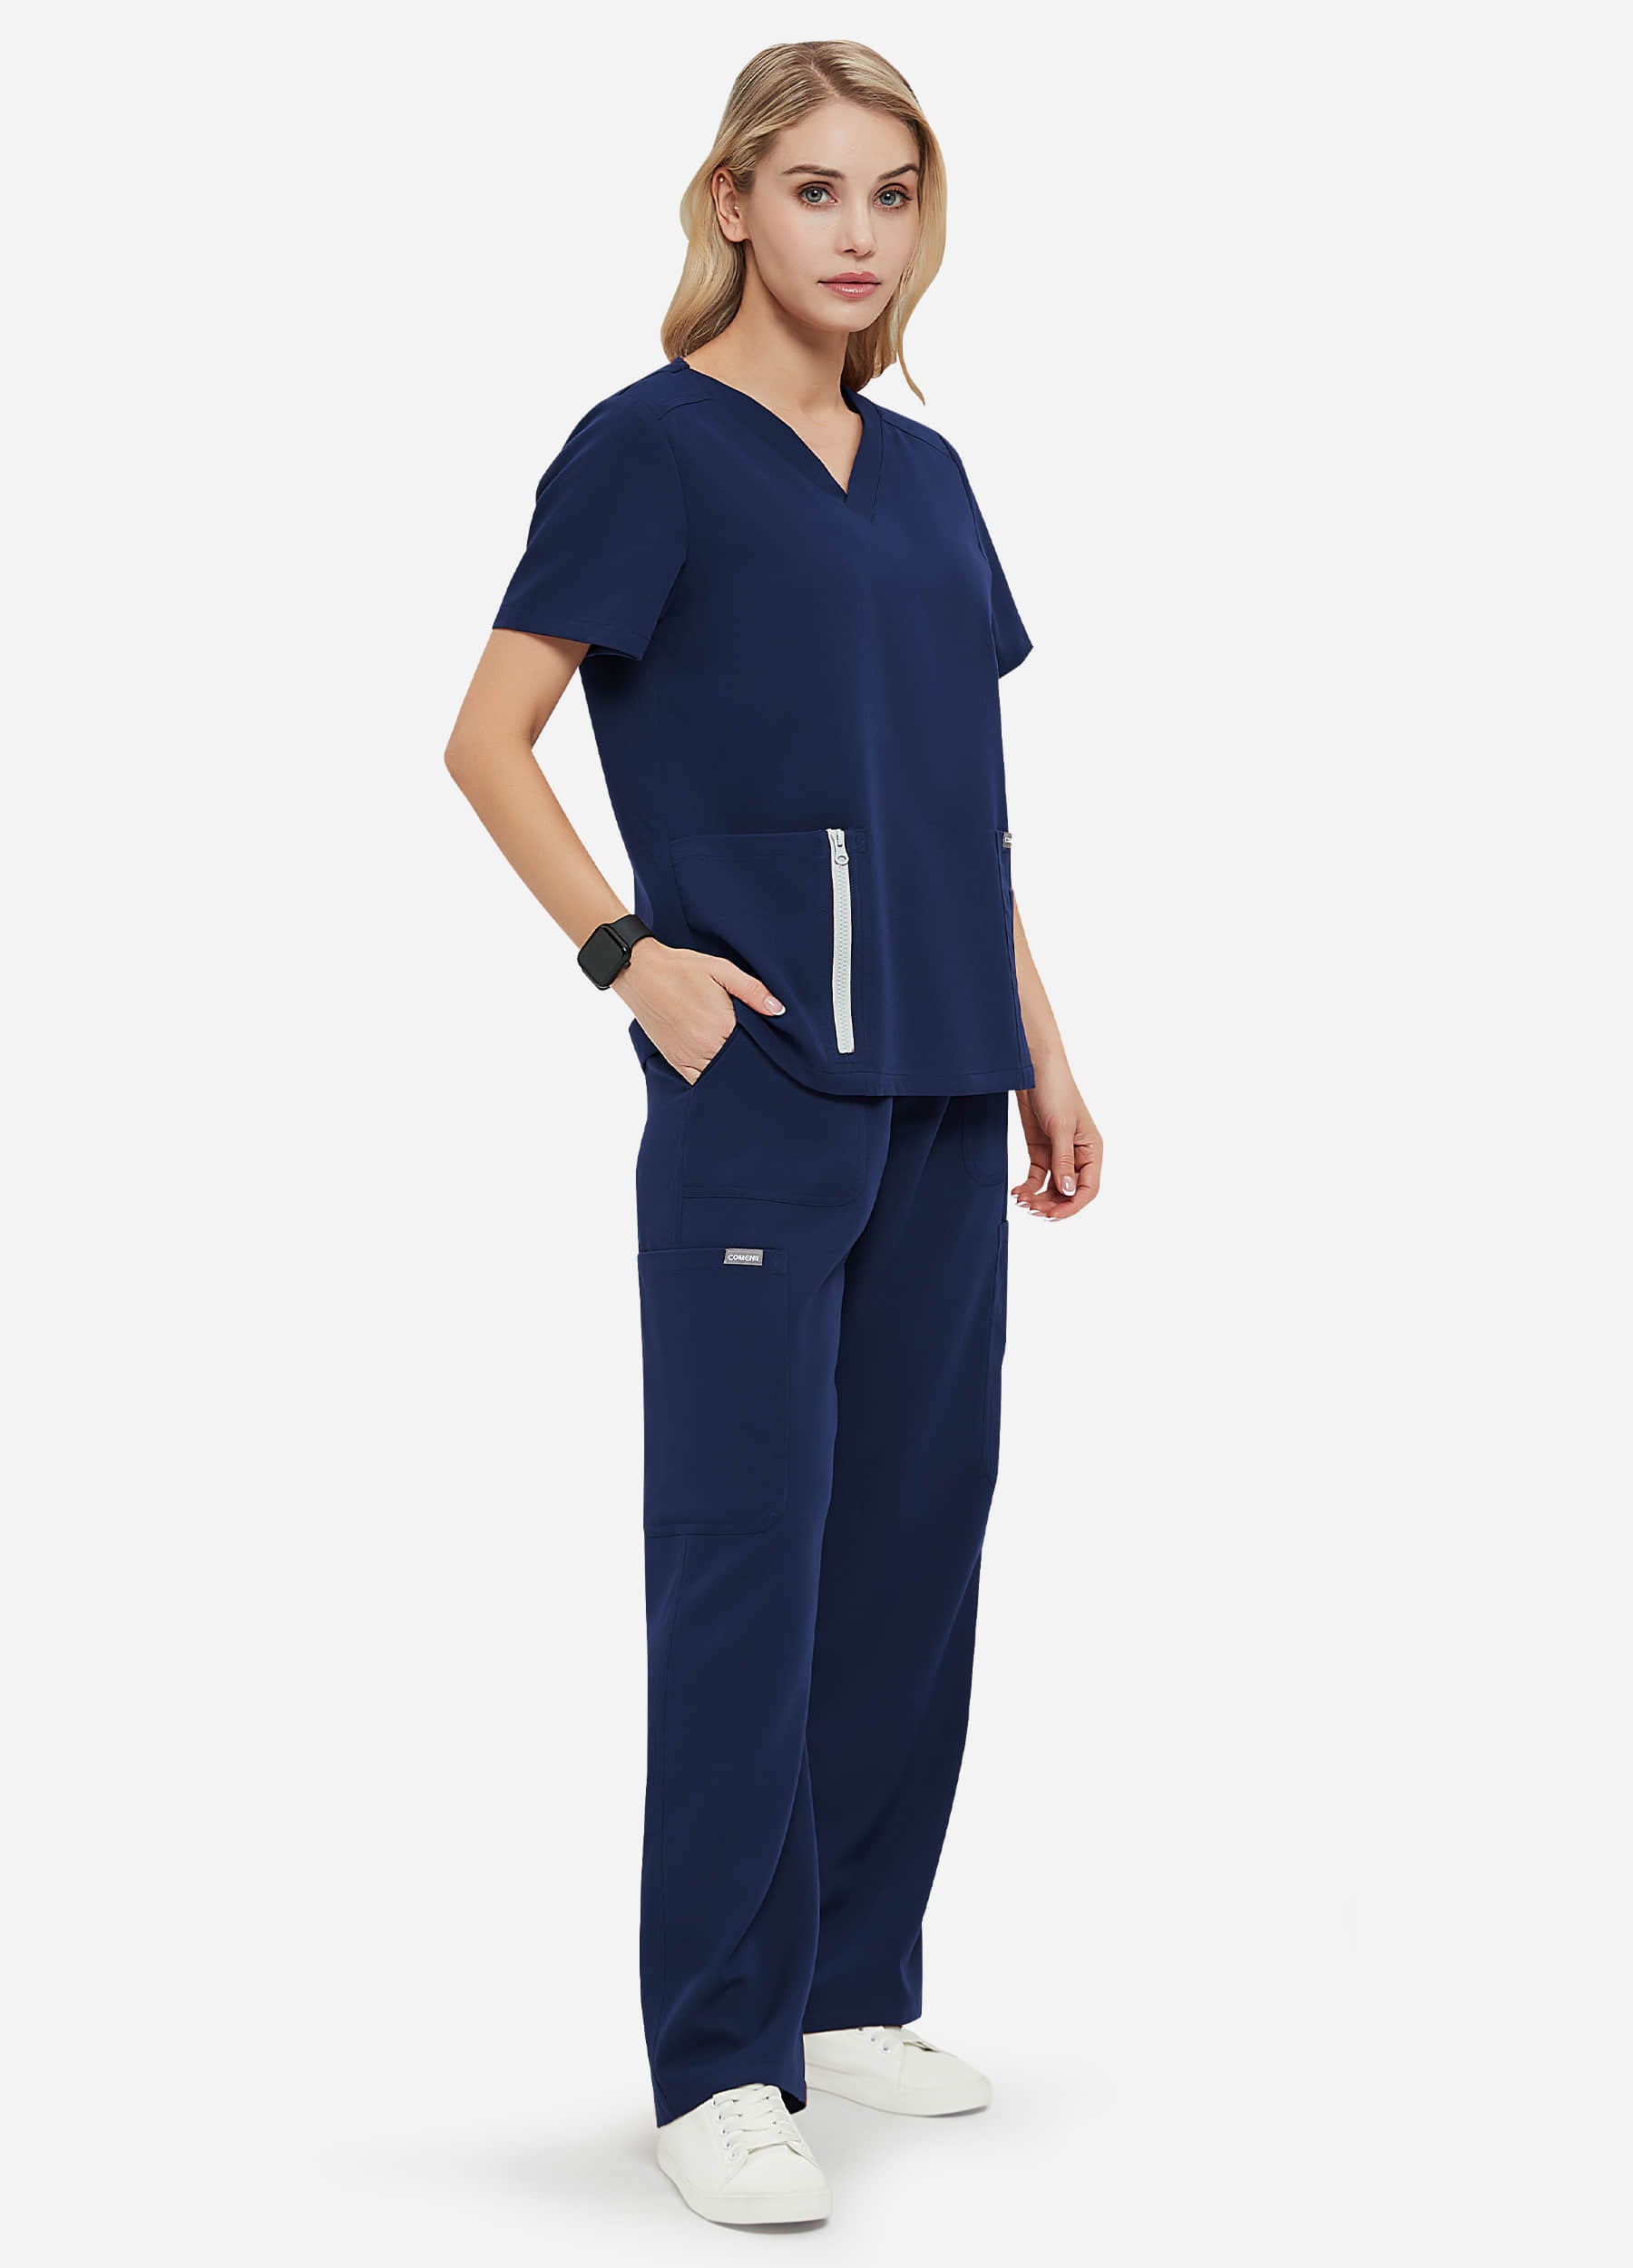 Blusa médica de 3 bolsillos con cierre vertical para mujer